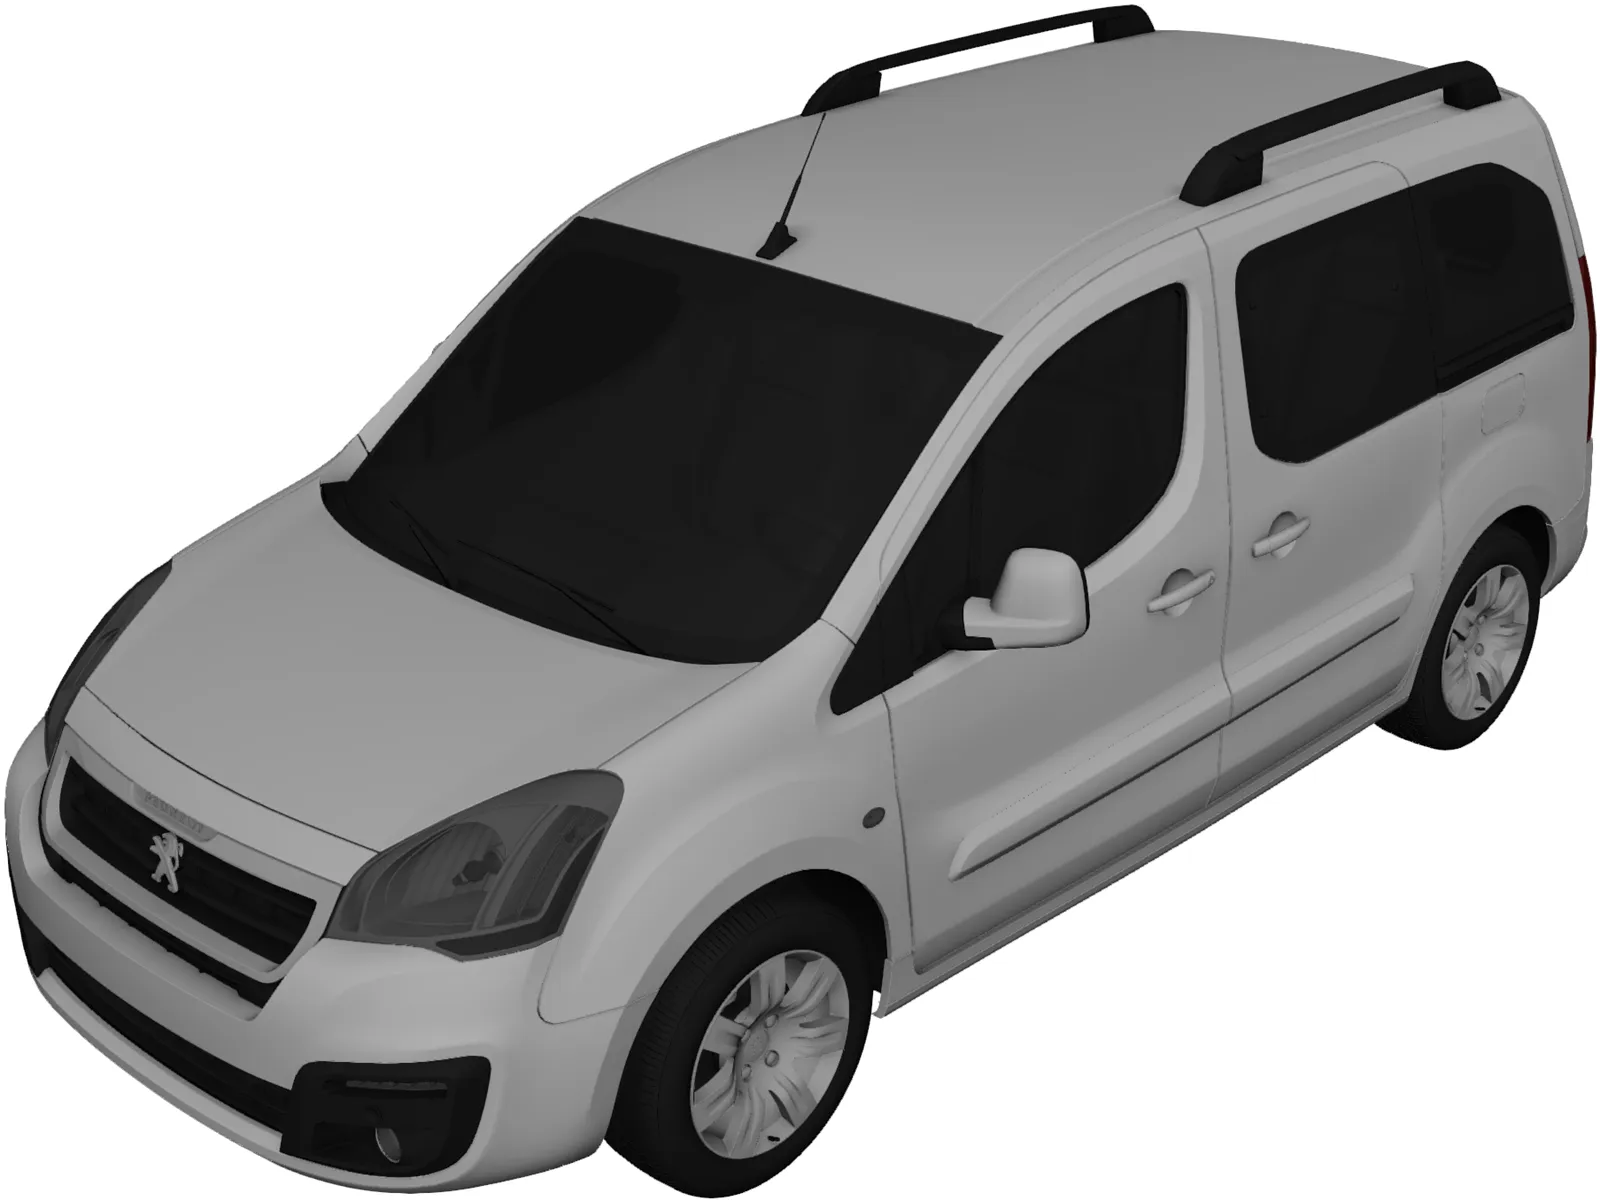 Peugeot Partner Tepee (2018) 3D Model